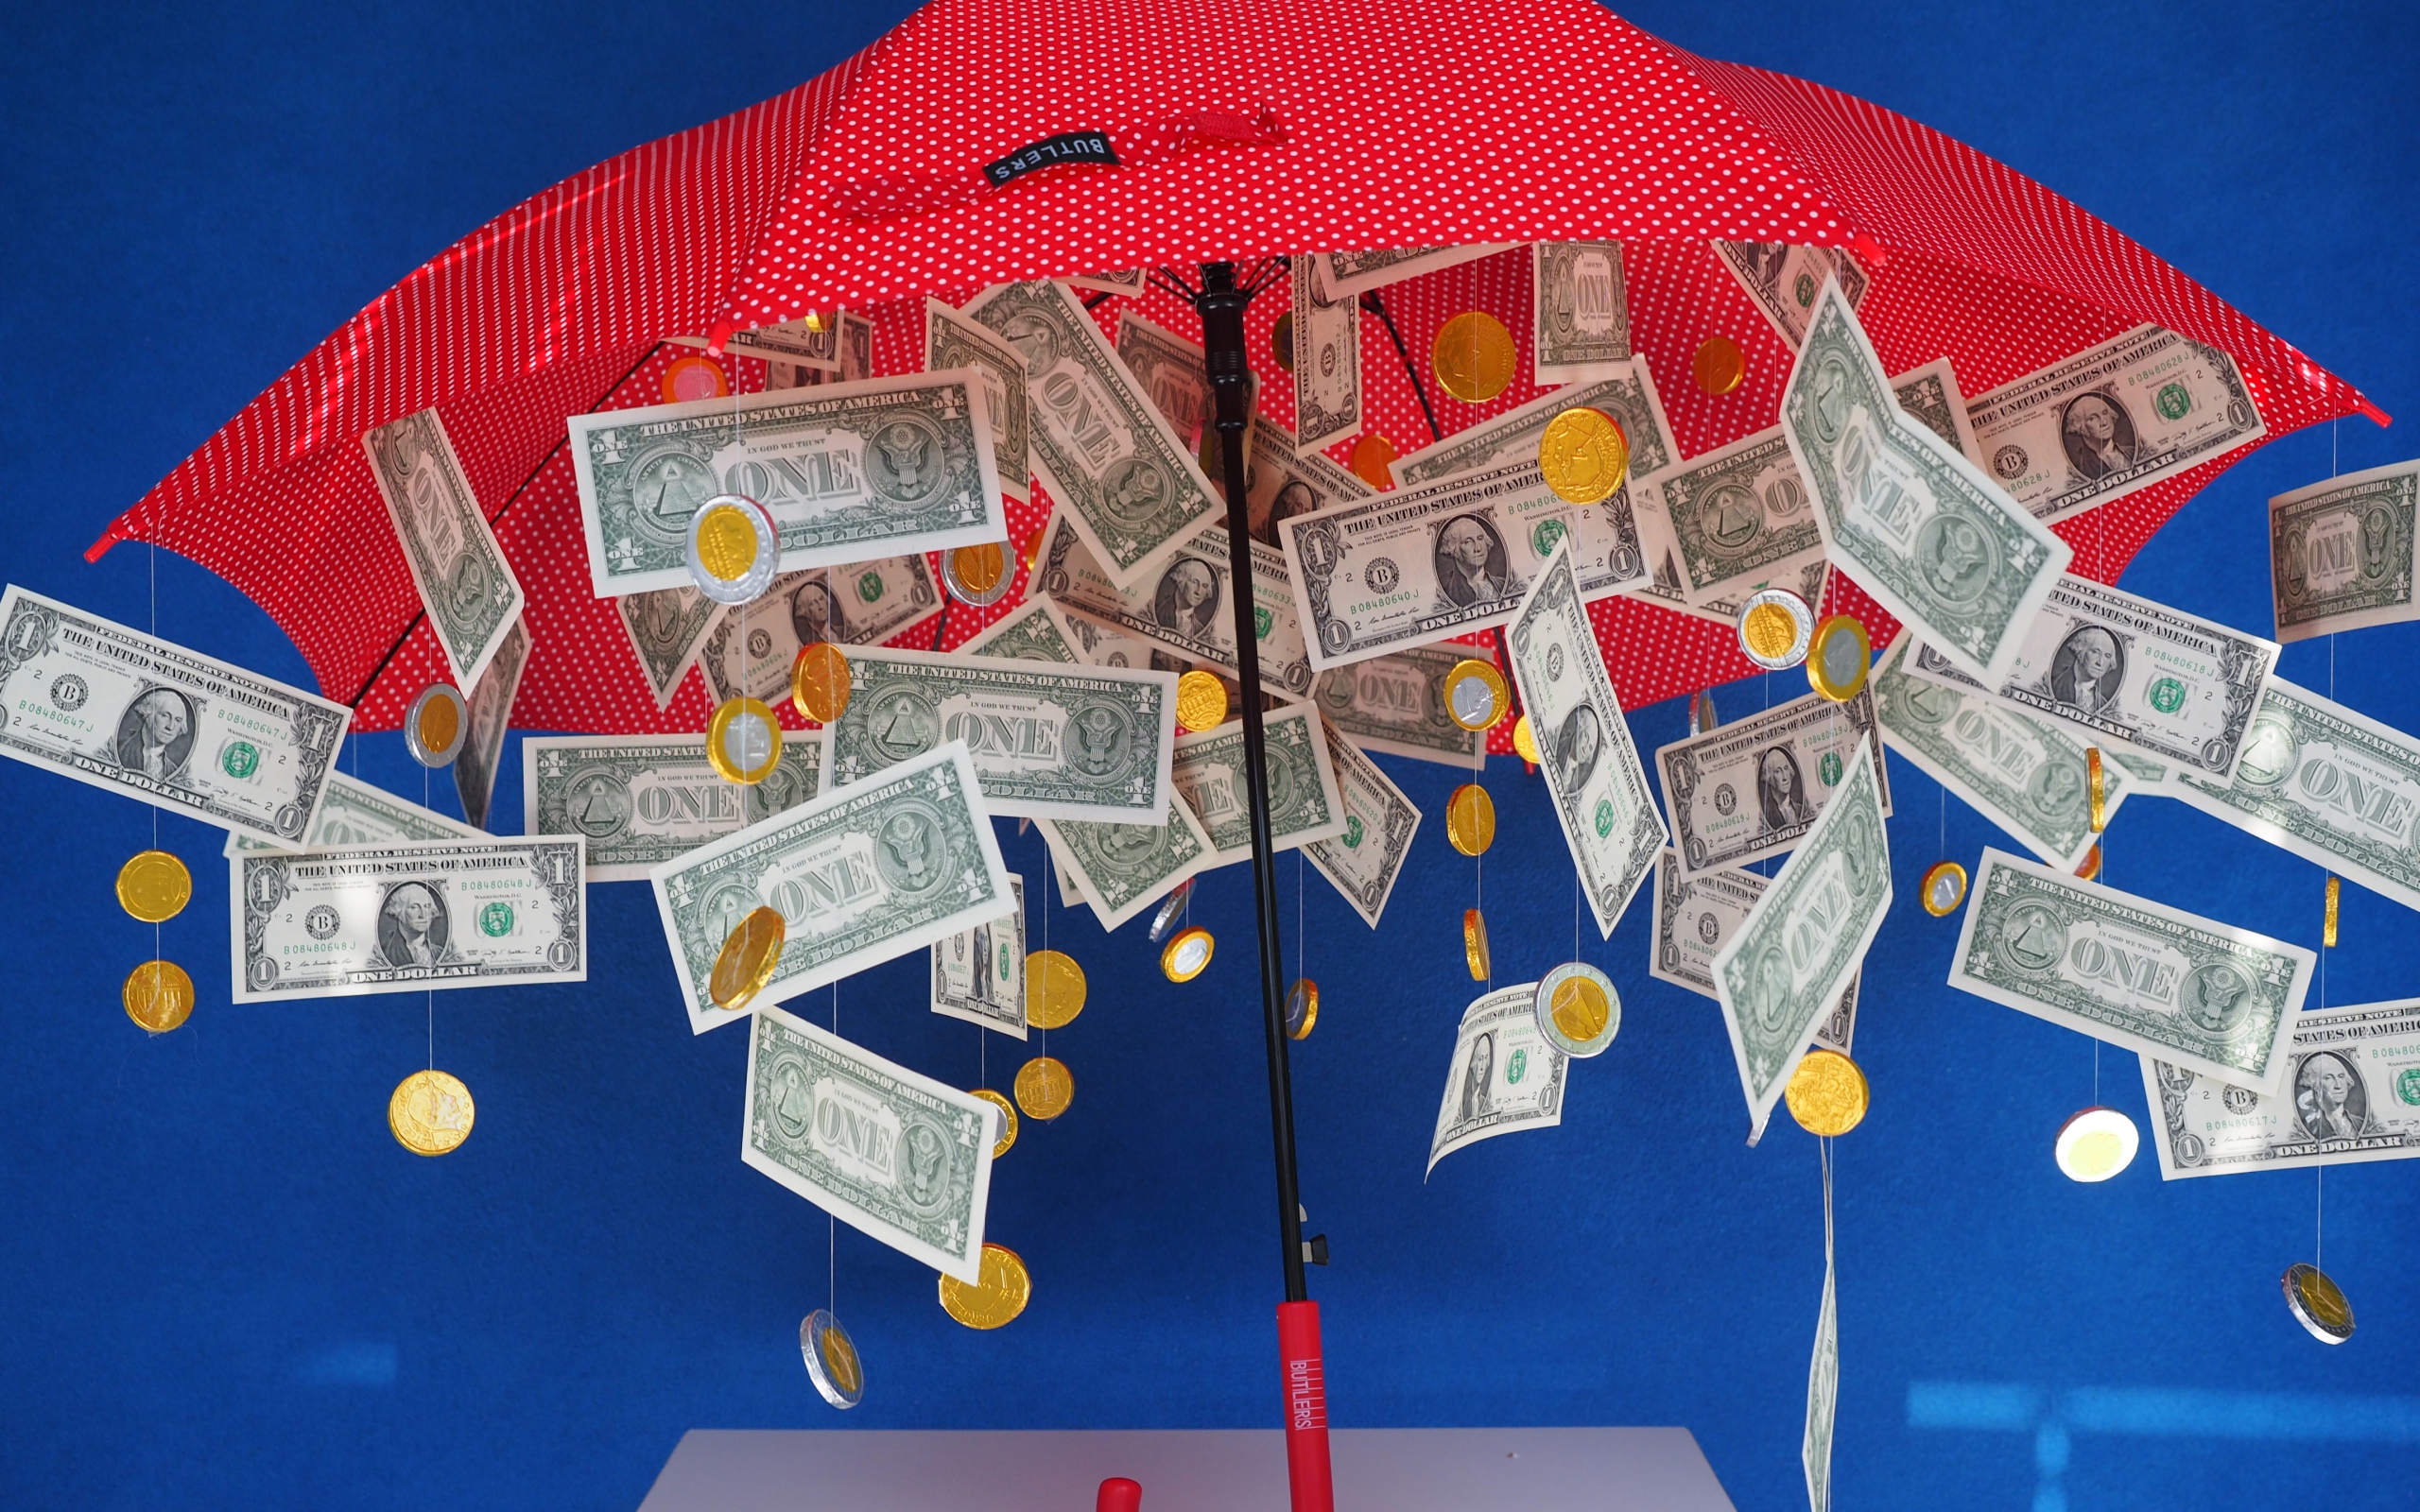 Доллары и монеты высыпаются из зонта на голубом фоне